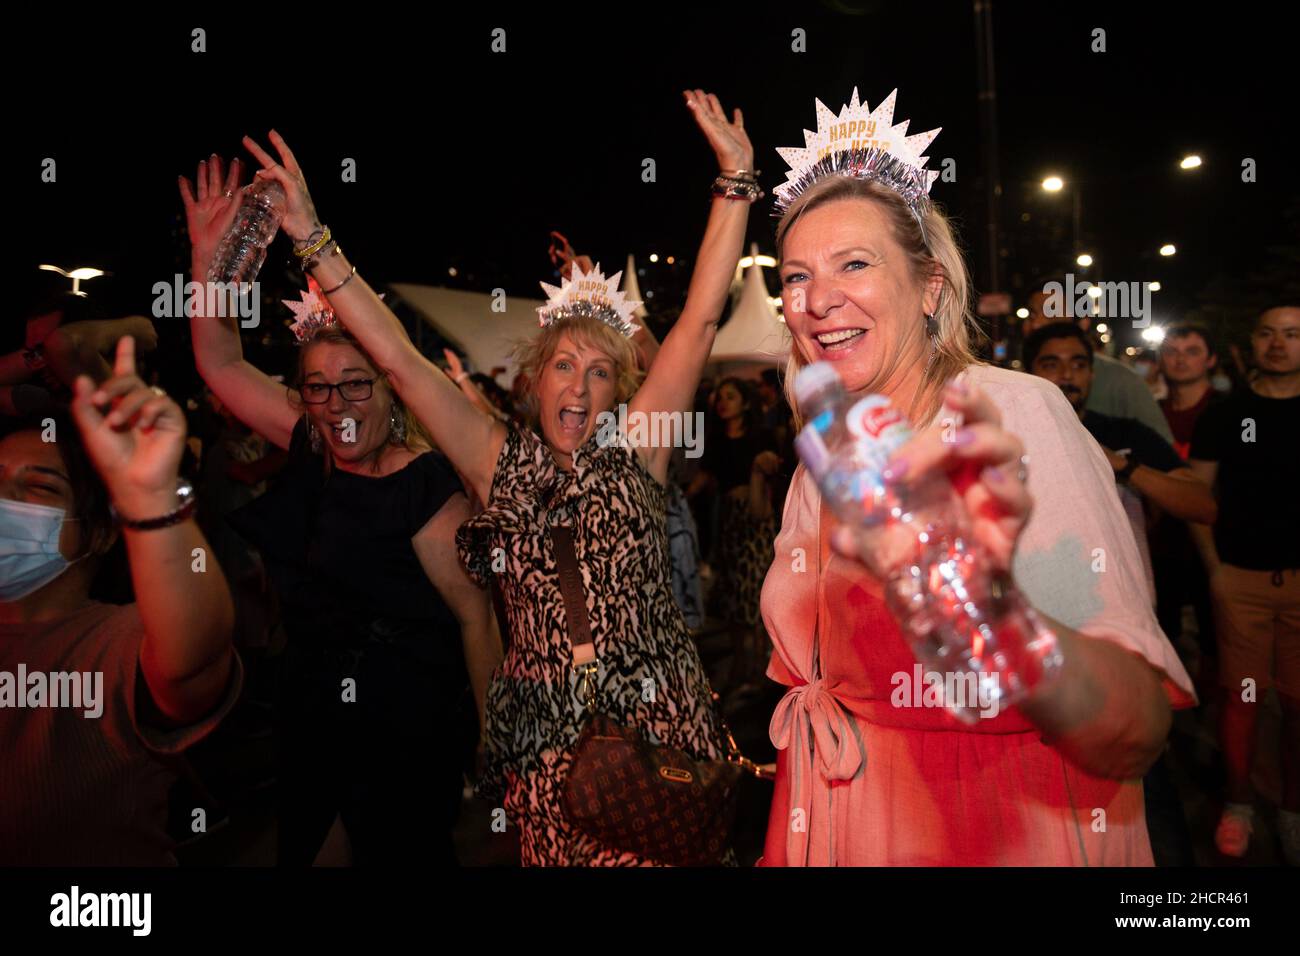 Melbourne, Australie 31 décembre 2021, les fêtards se sont délarés et dansent la nuit pendant les événements autour de Melbourne, au cours desquels les gens ont vu le nouvel an en faisant la fête et en buvant avec des amis et des feux d'artifice, avec l'espoir d'un 2022 meilleur !Crédit : Michael Currie/Alay Live News Banque D'Images